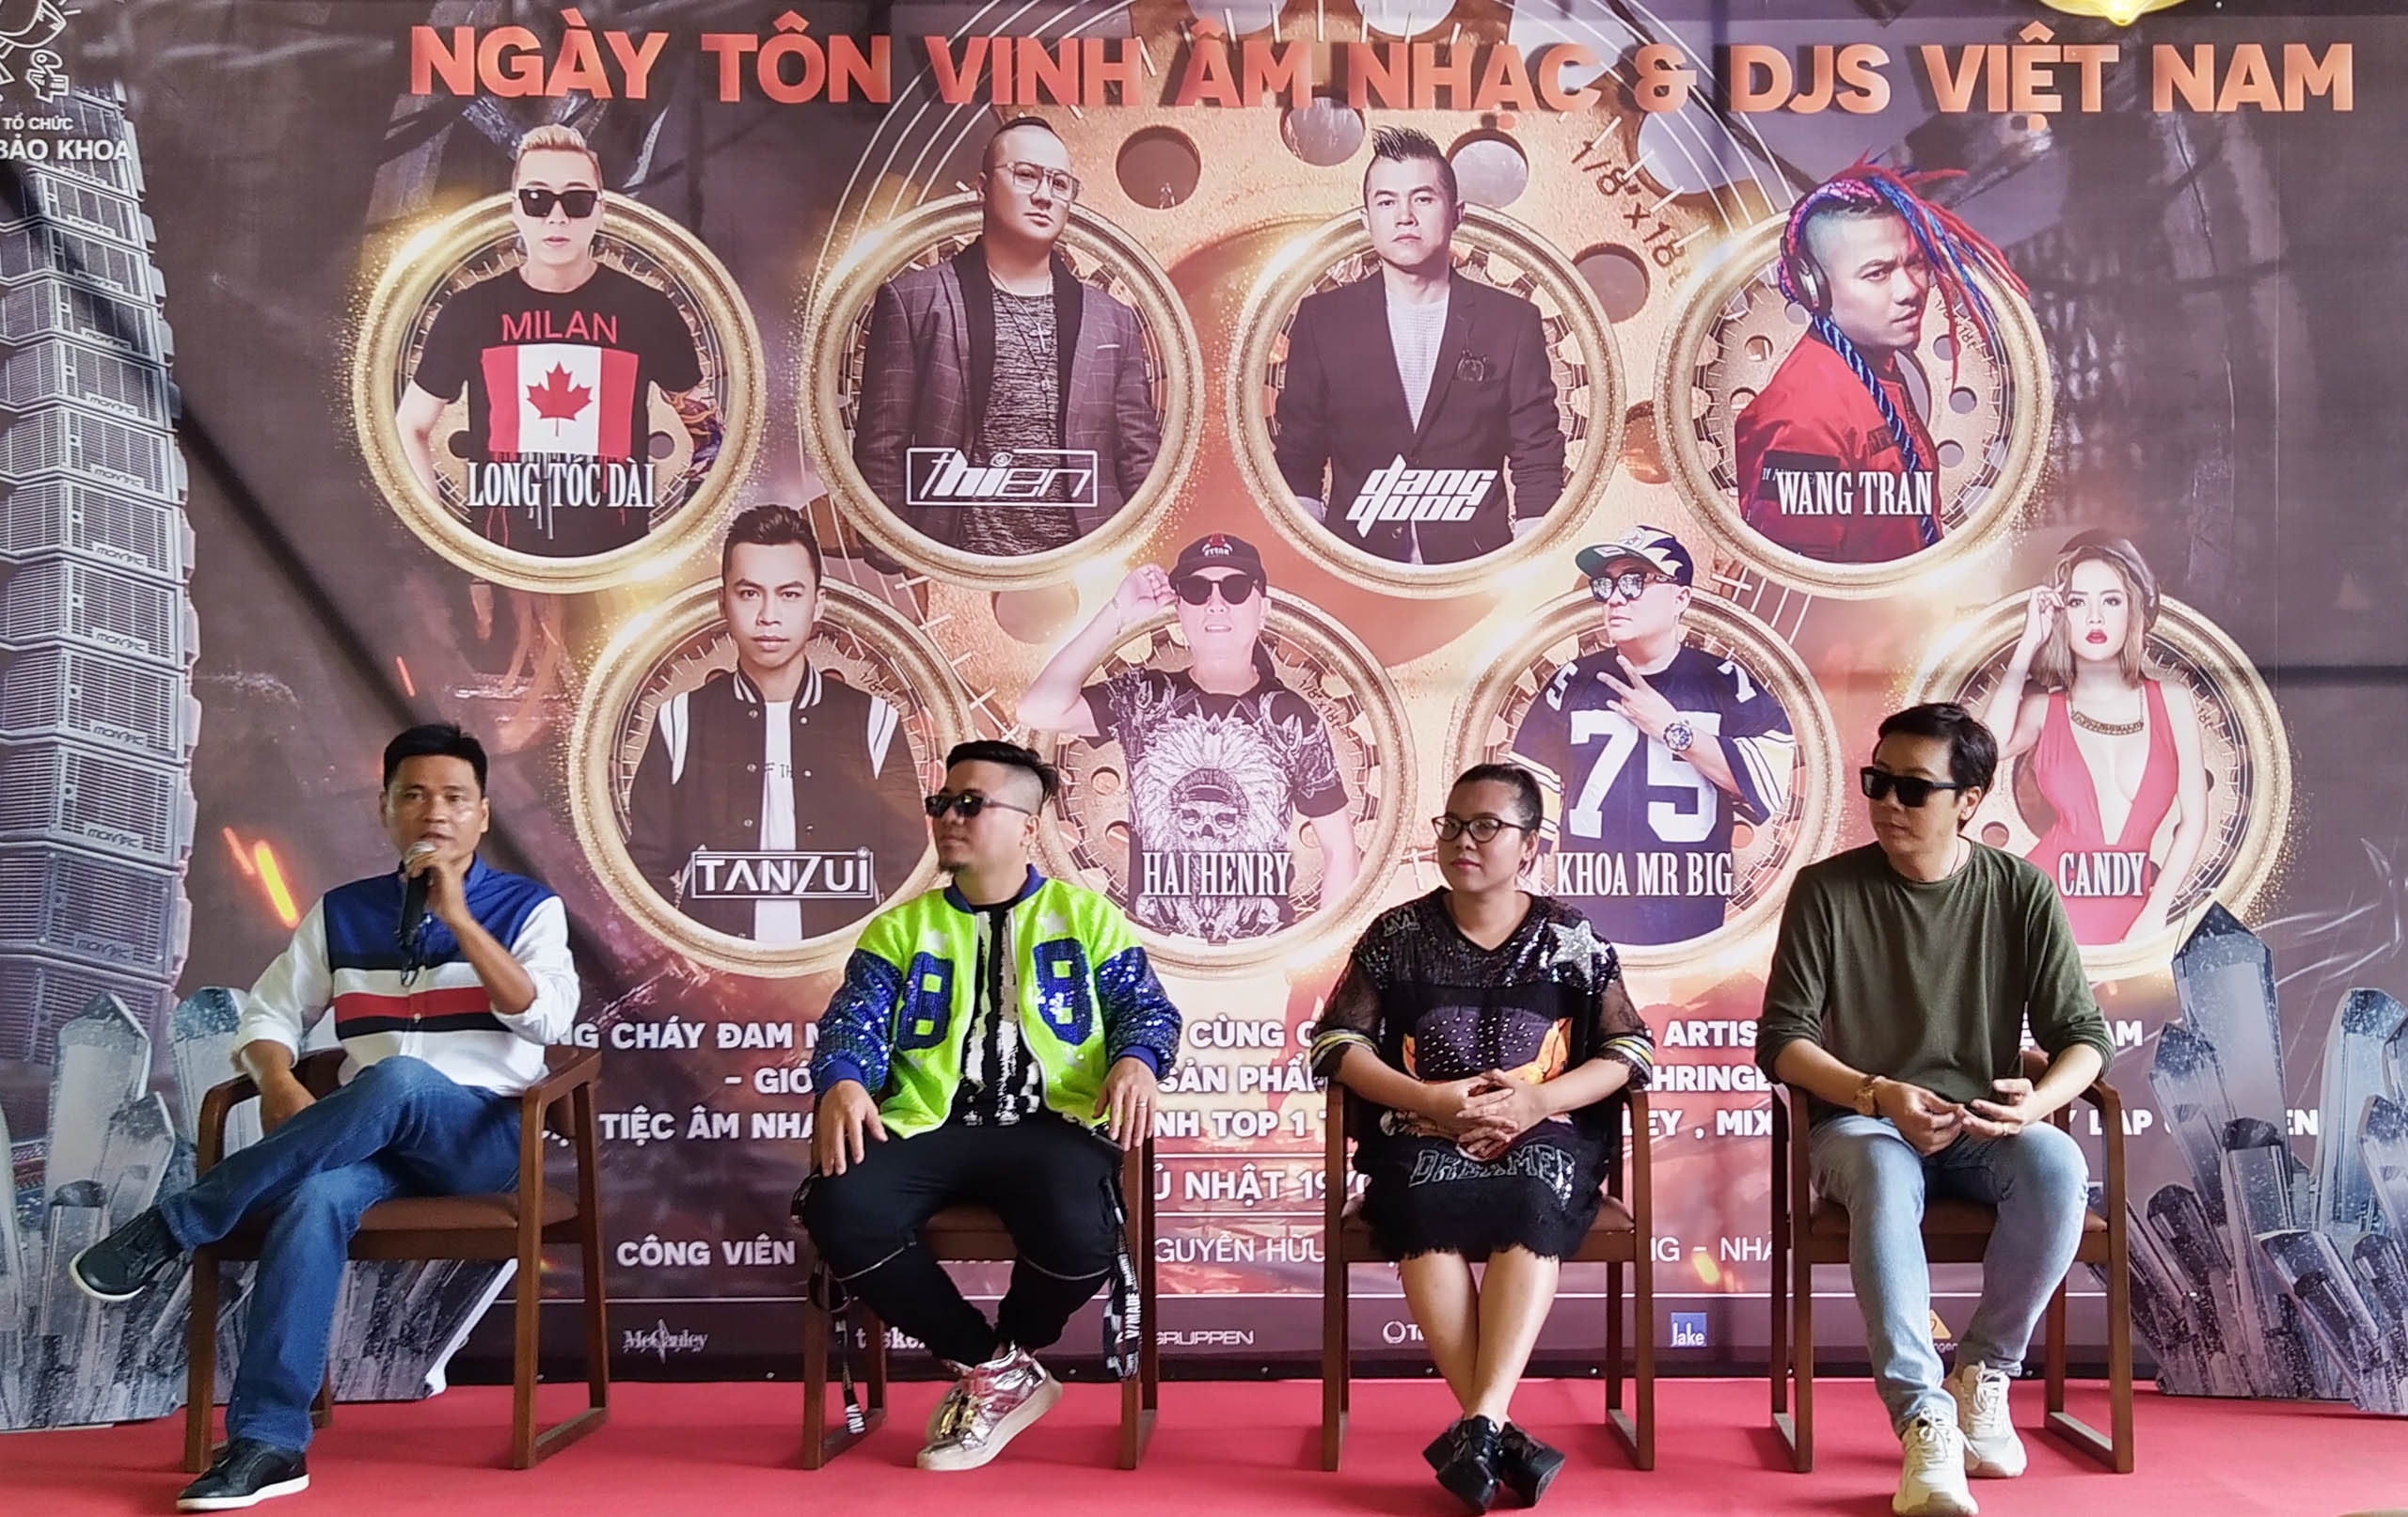 Hoàng Bảo Khoa bắt tay cùng cộng đồng EDM tổ chức ngày hội DJ lớn nhất Việt Nam